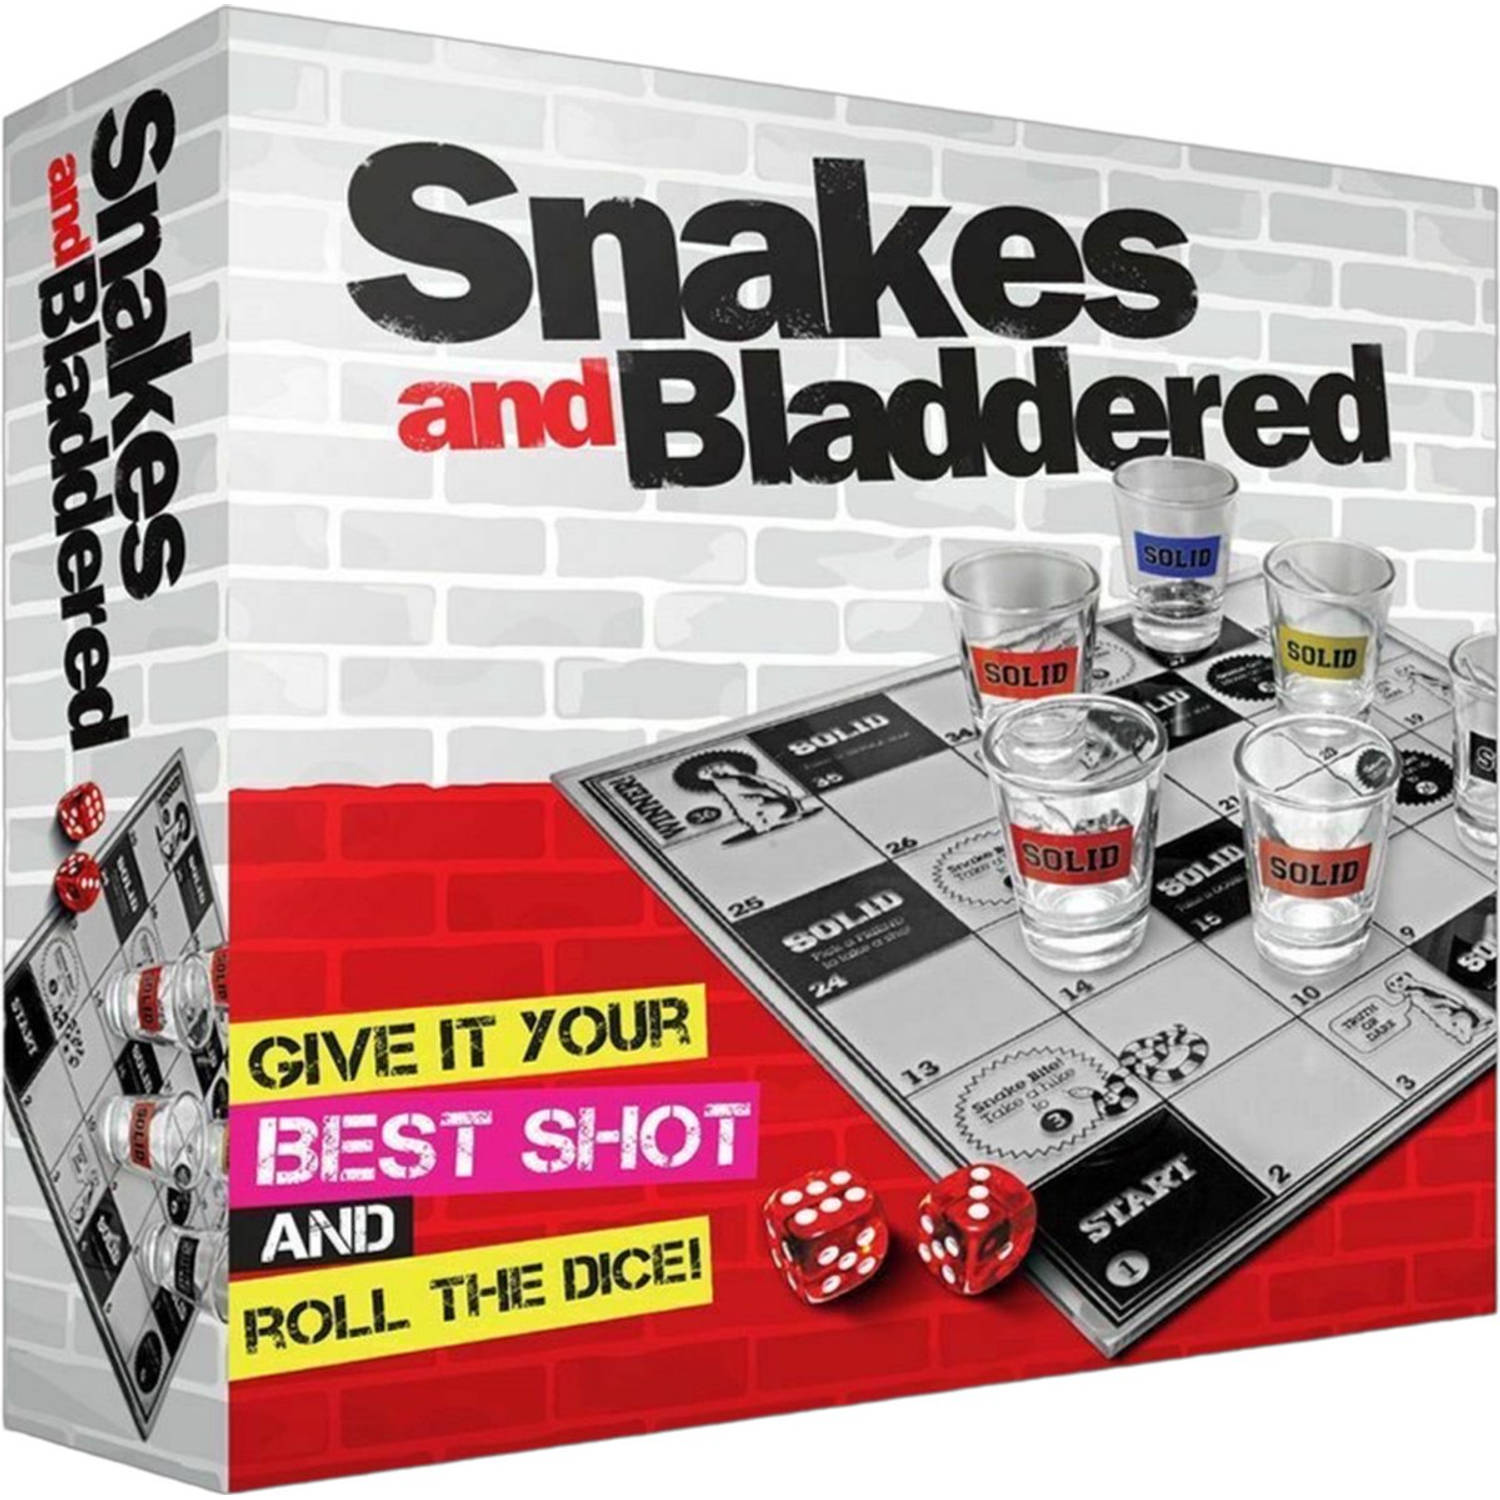 #Winning Snakes and Bladdered Drankspel Shotjes Dobbelen